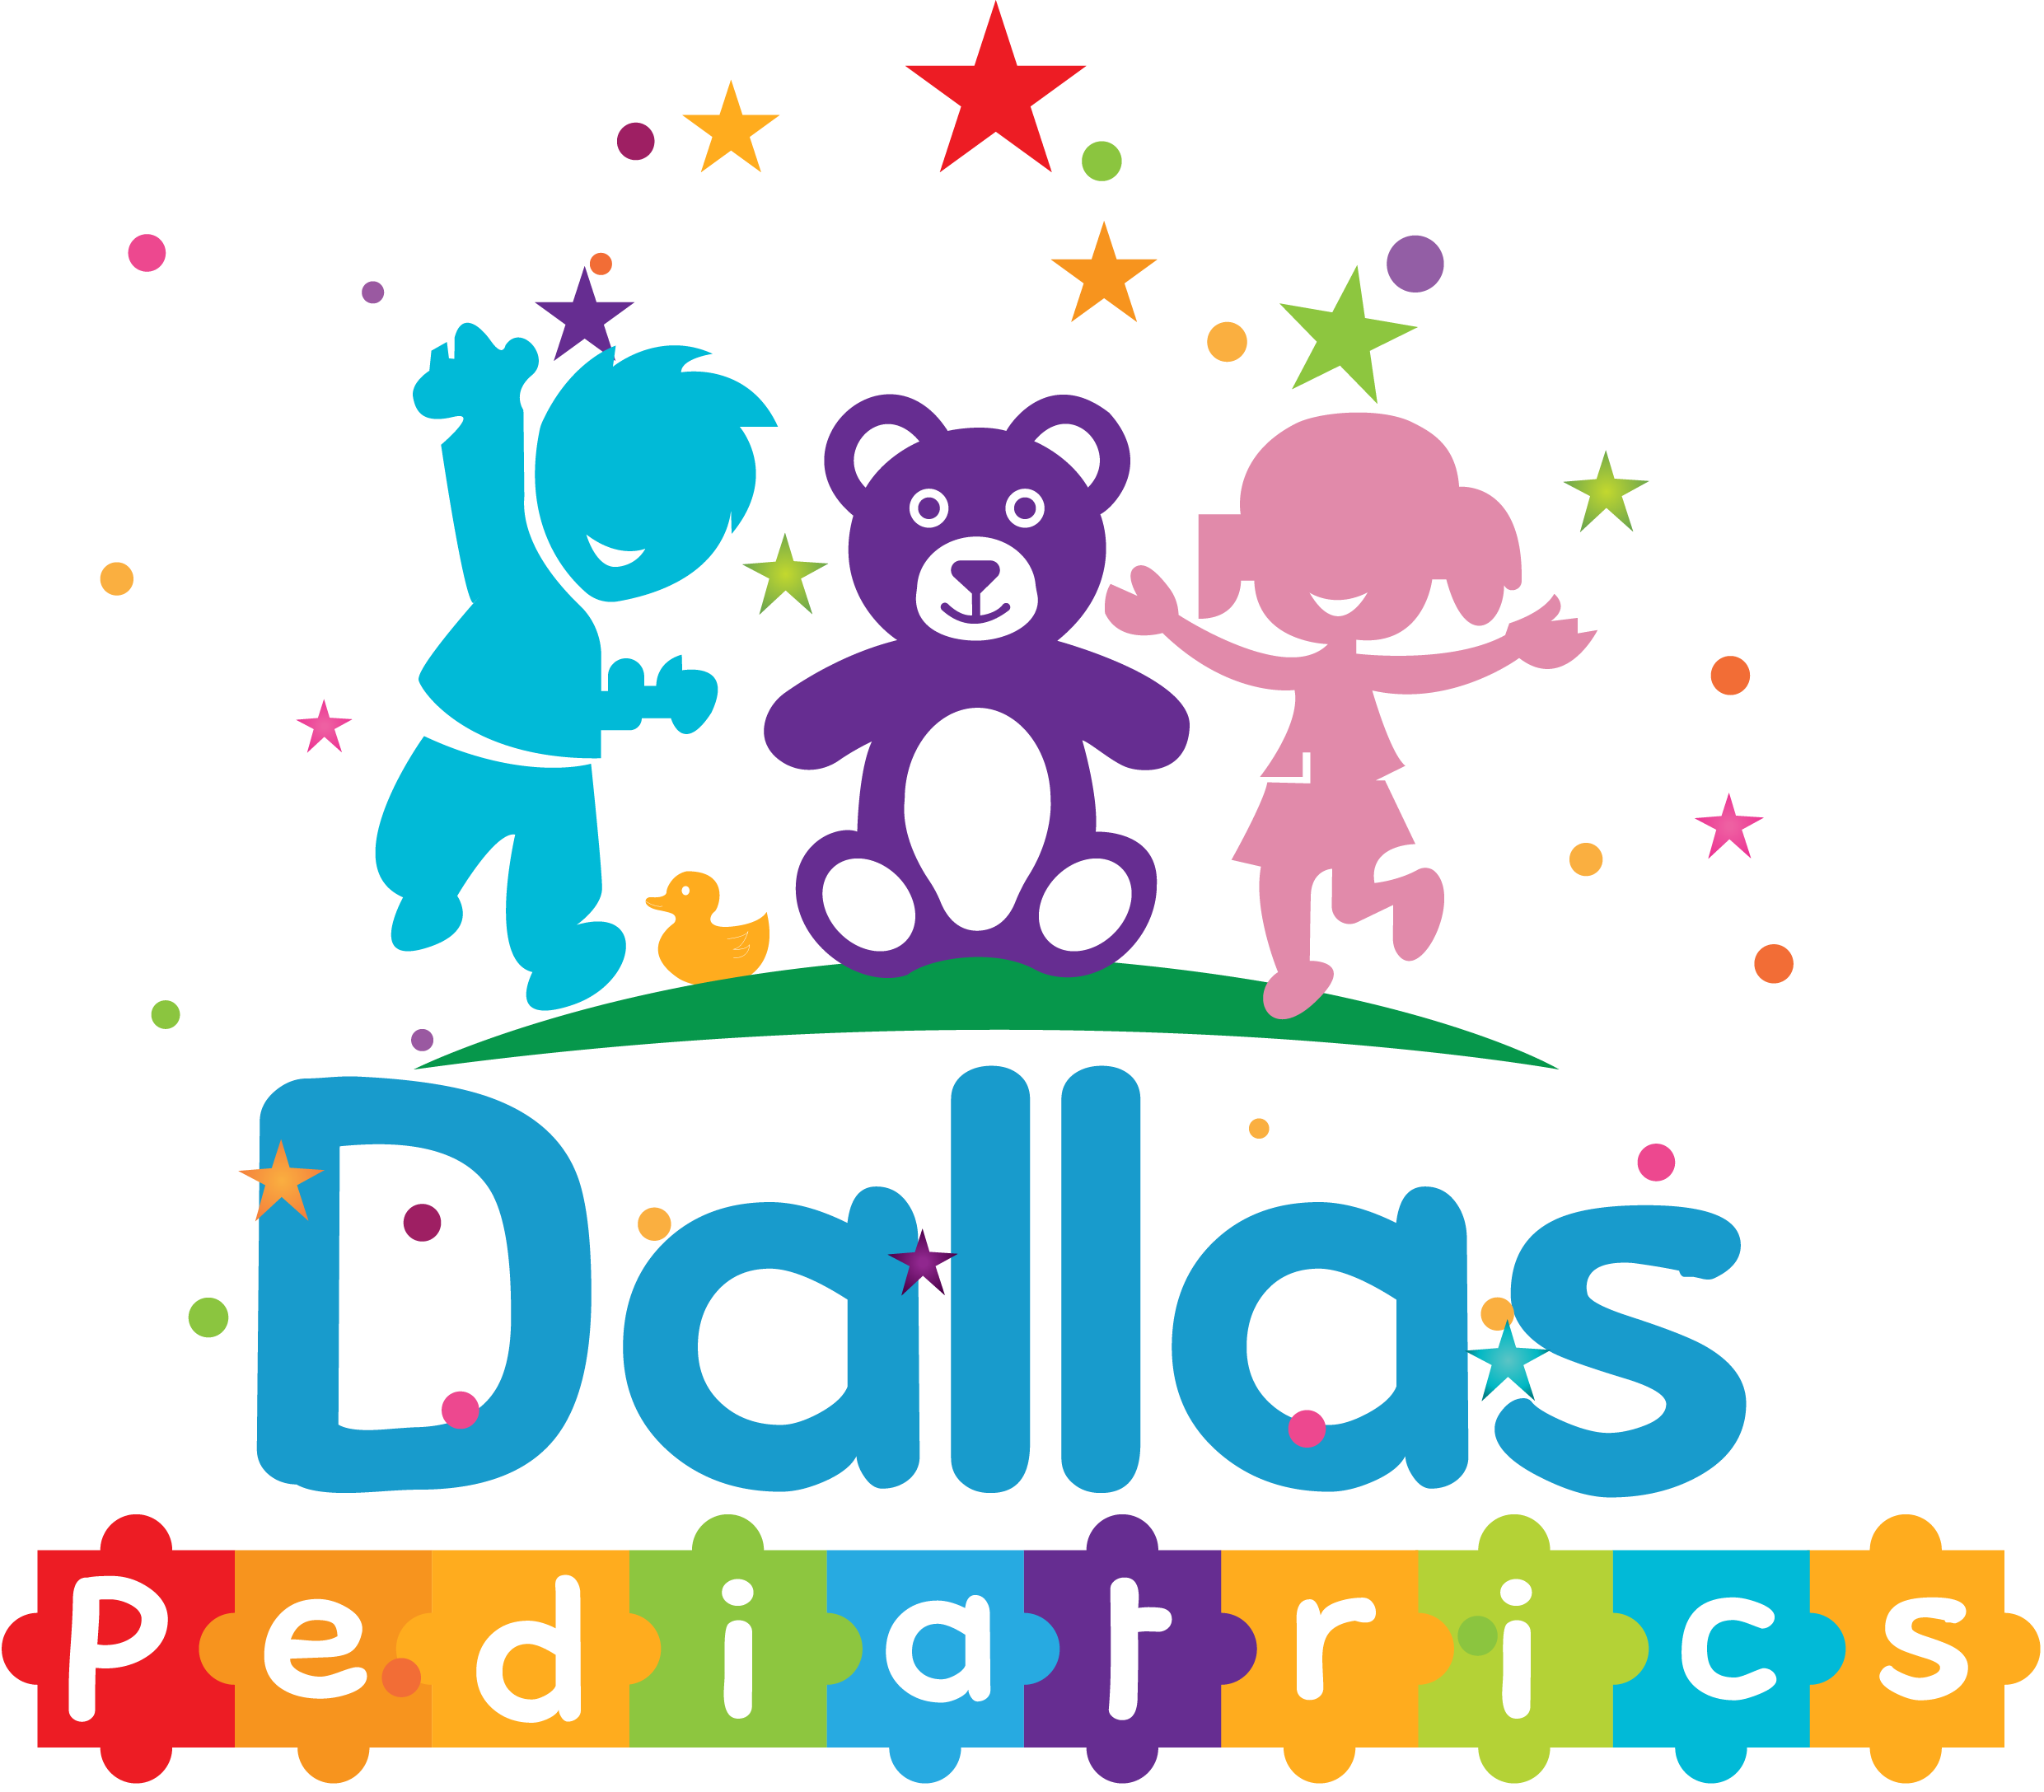 Dallas Pediatrics